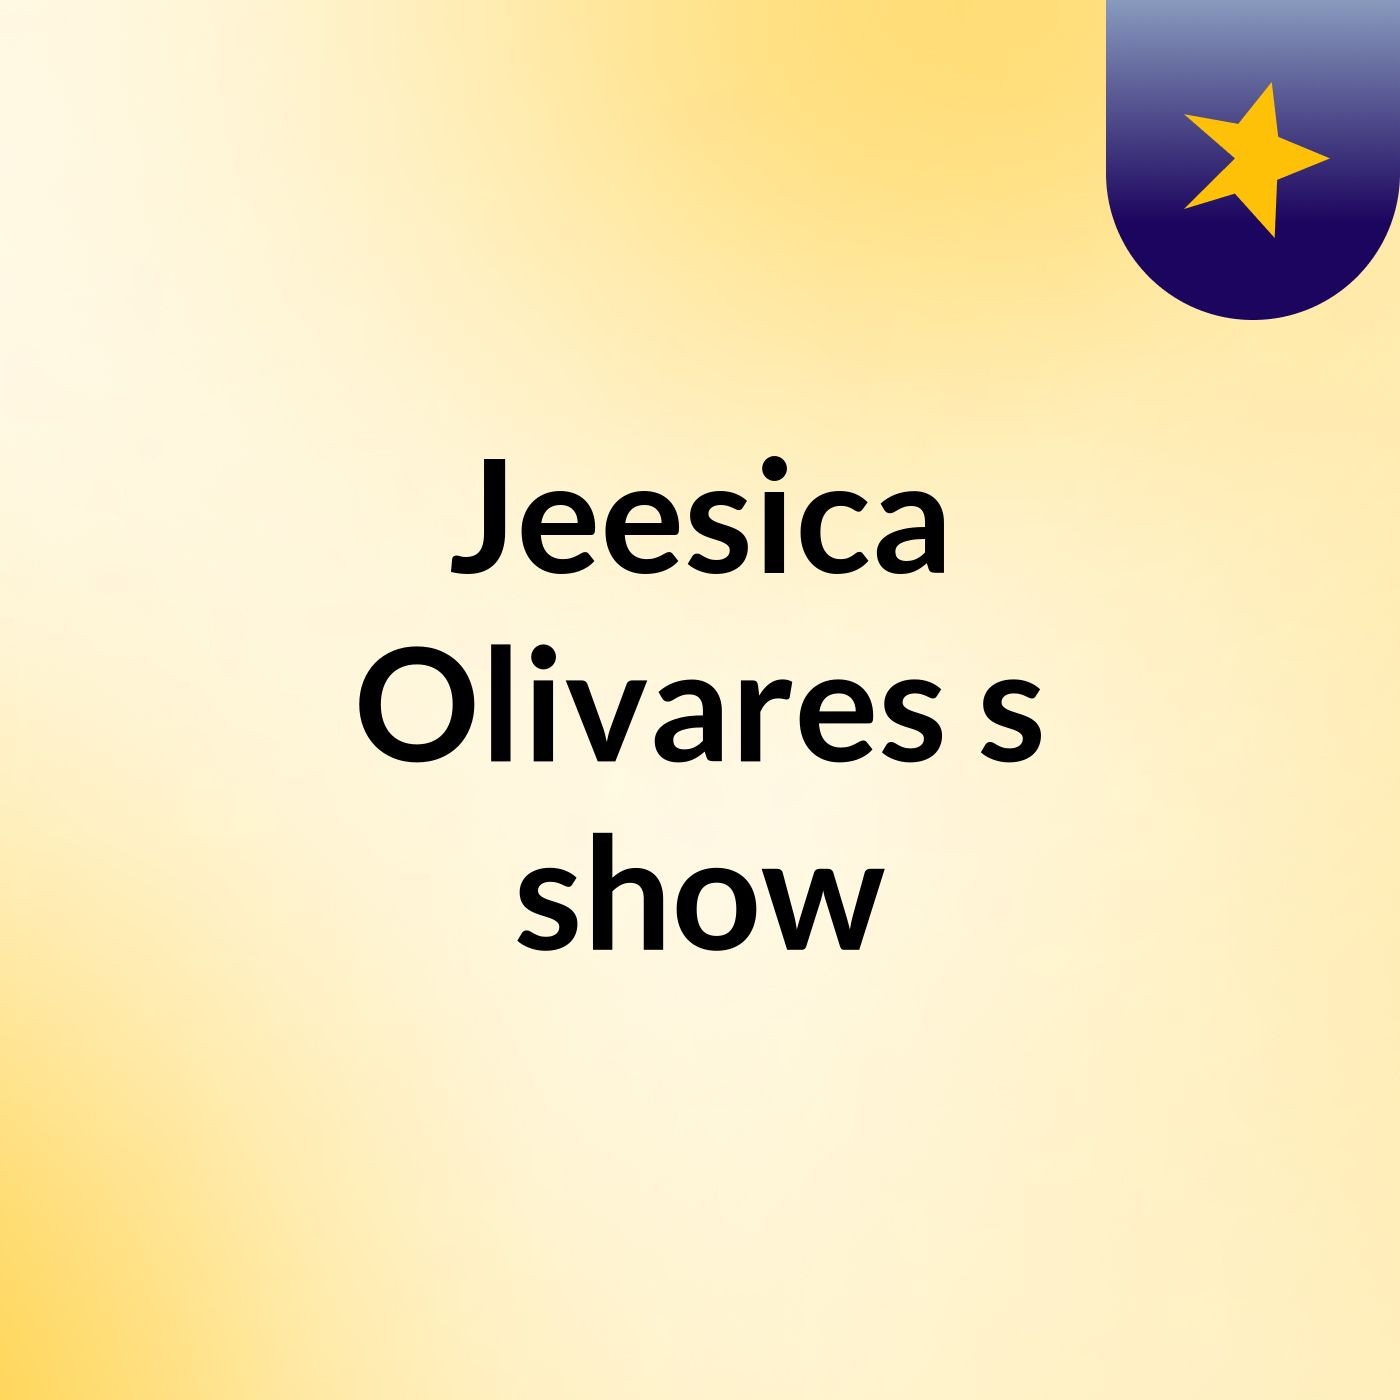 Jeesica Olivares's show